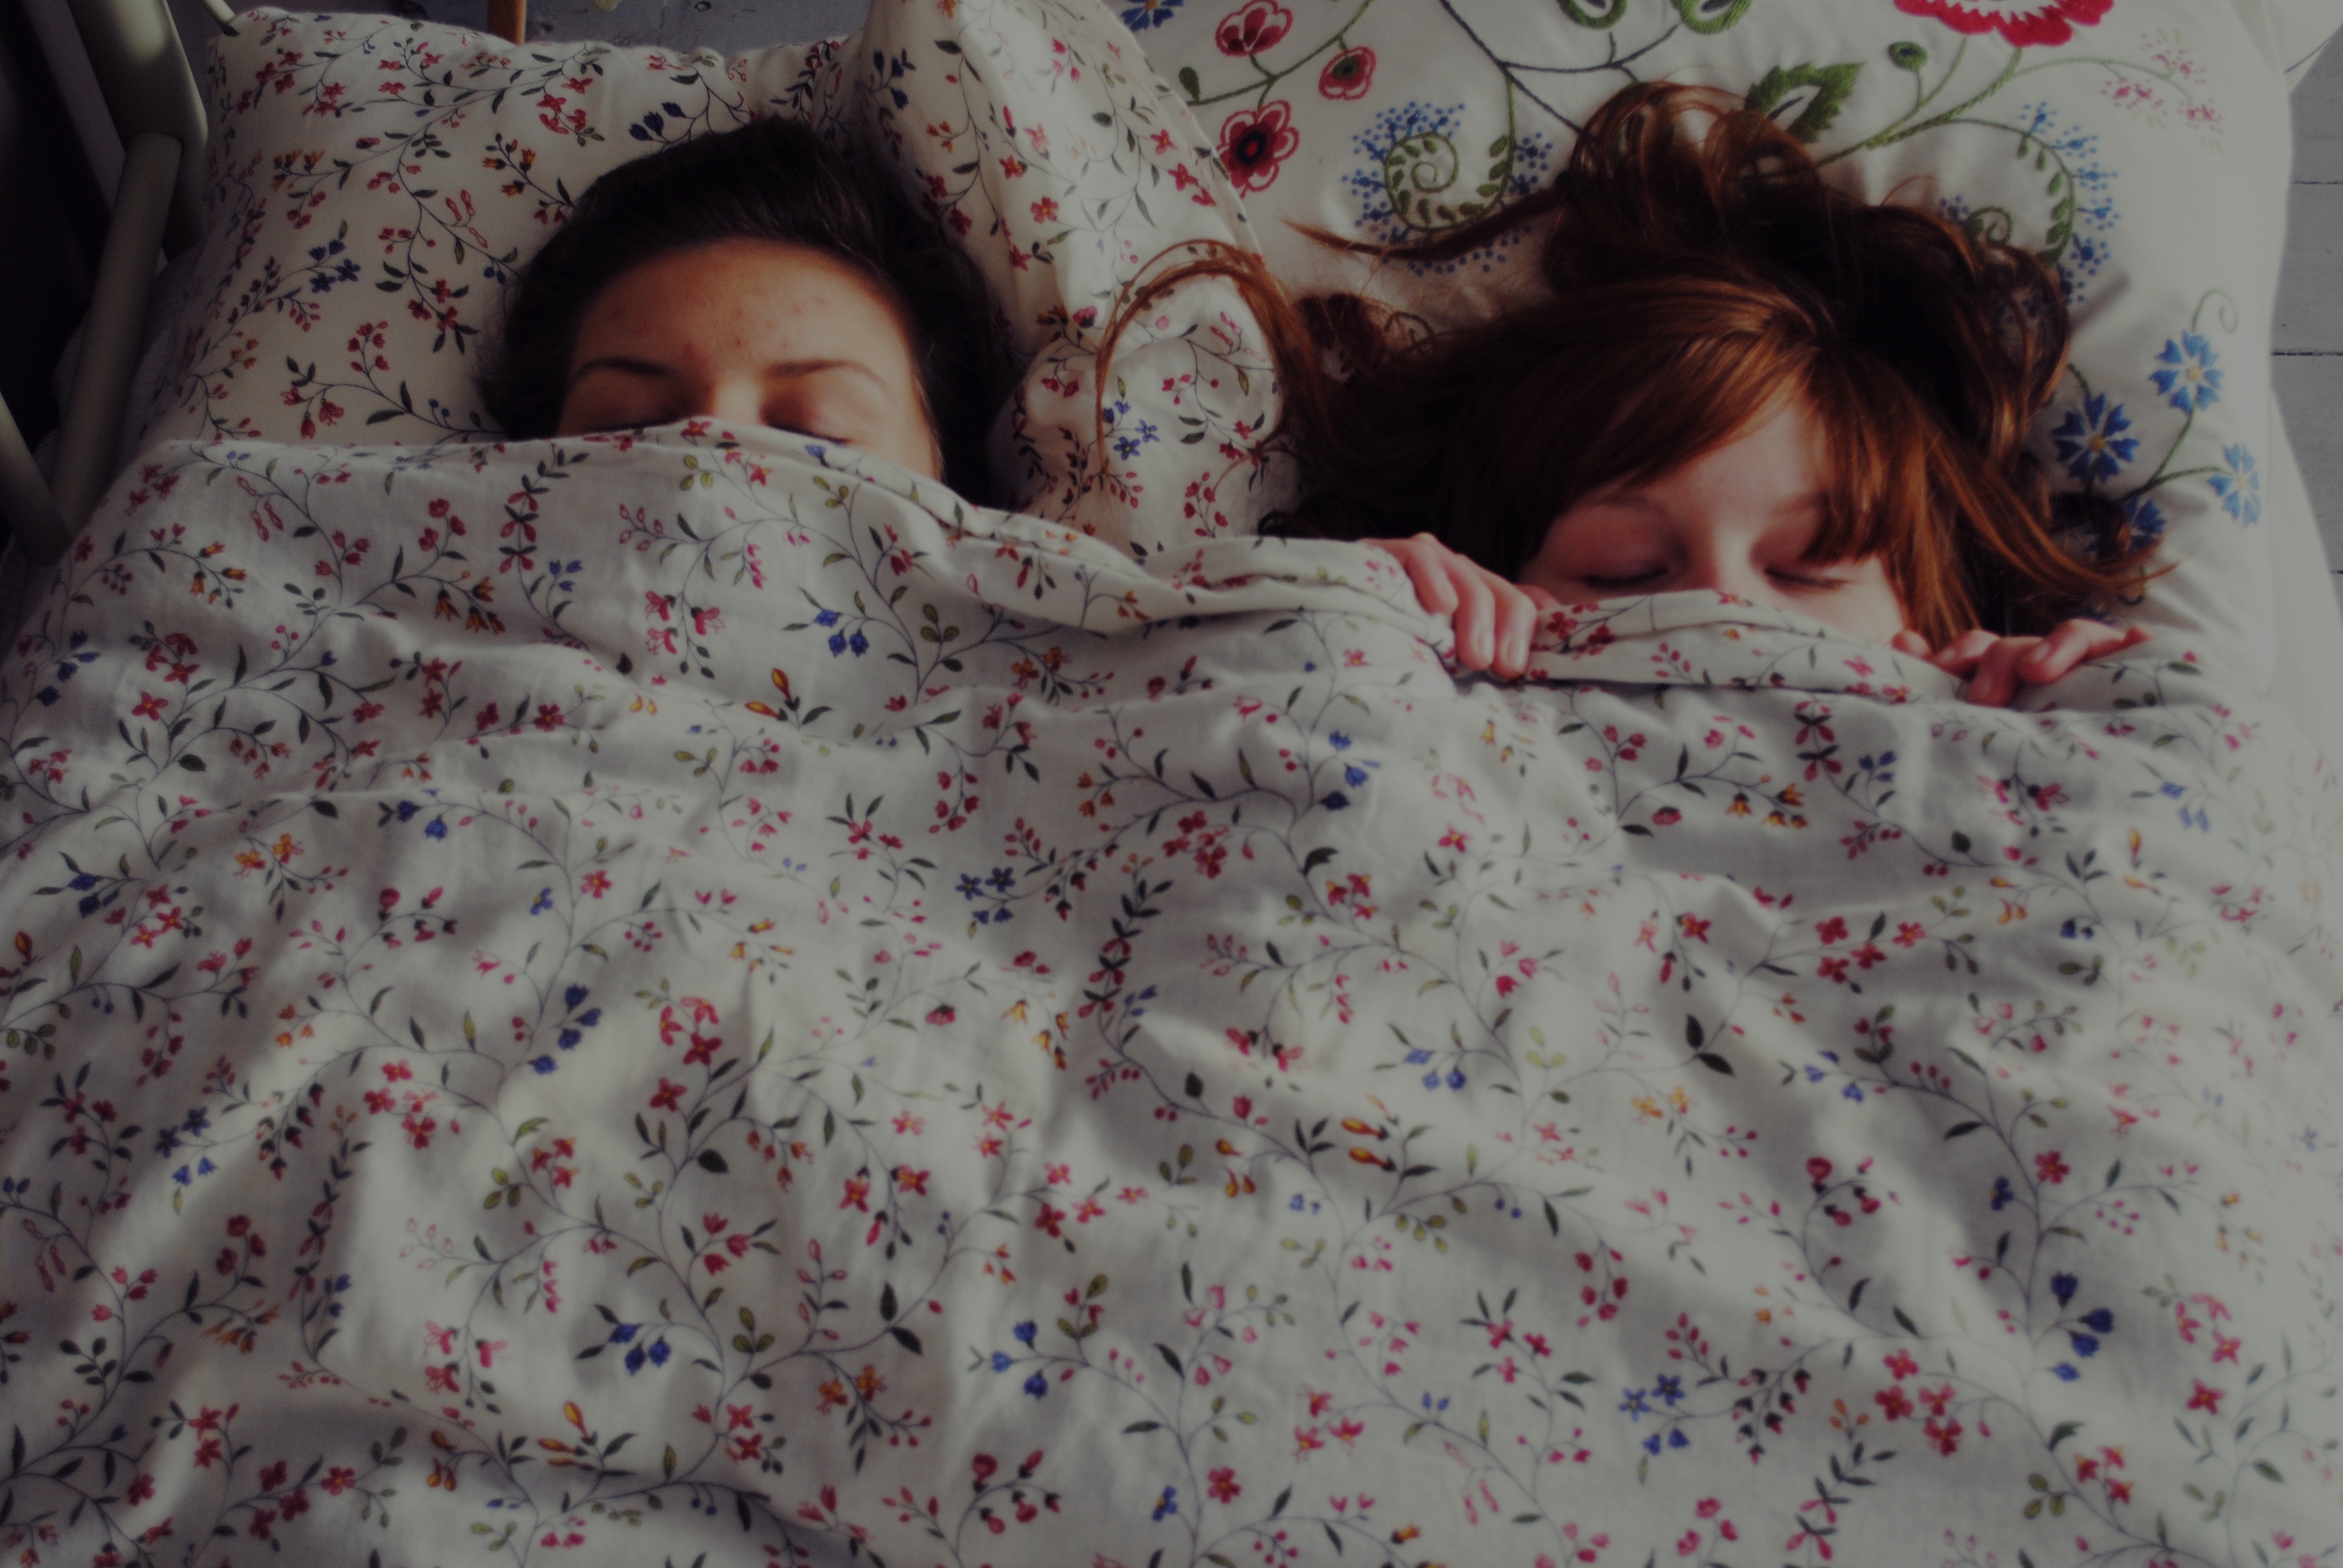 Подруги спят вместе. Девочка под одеялом.